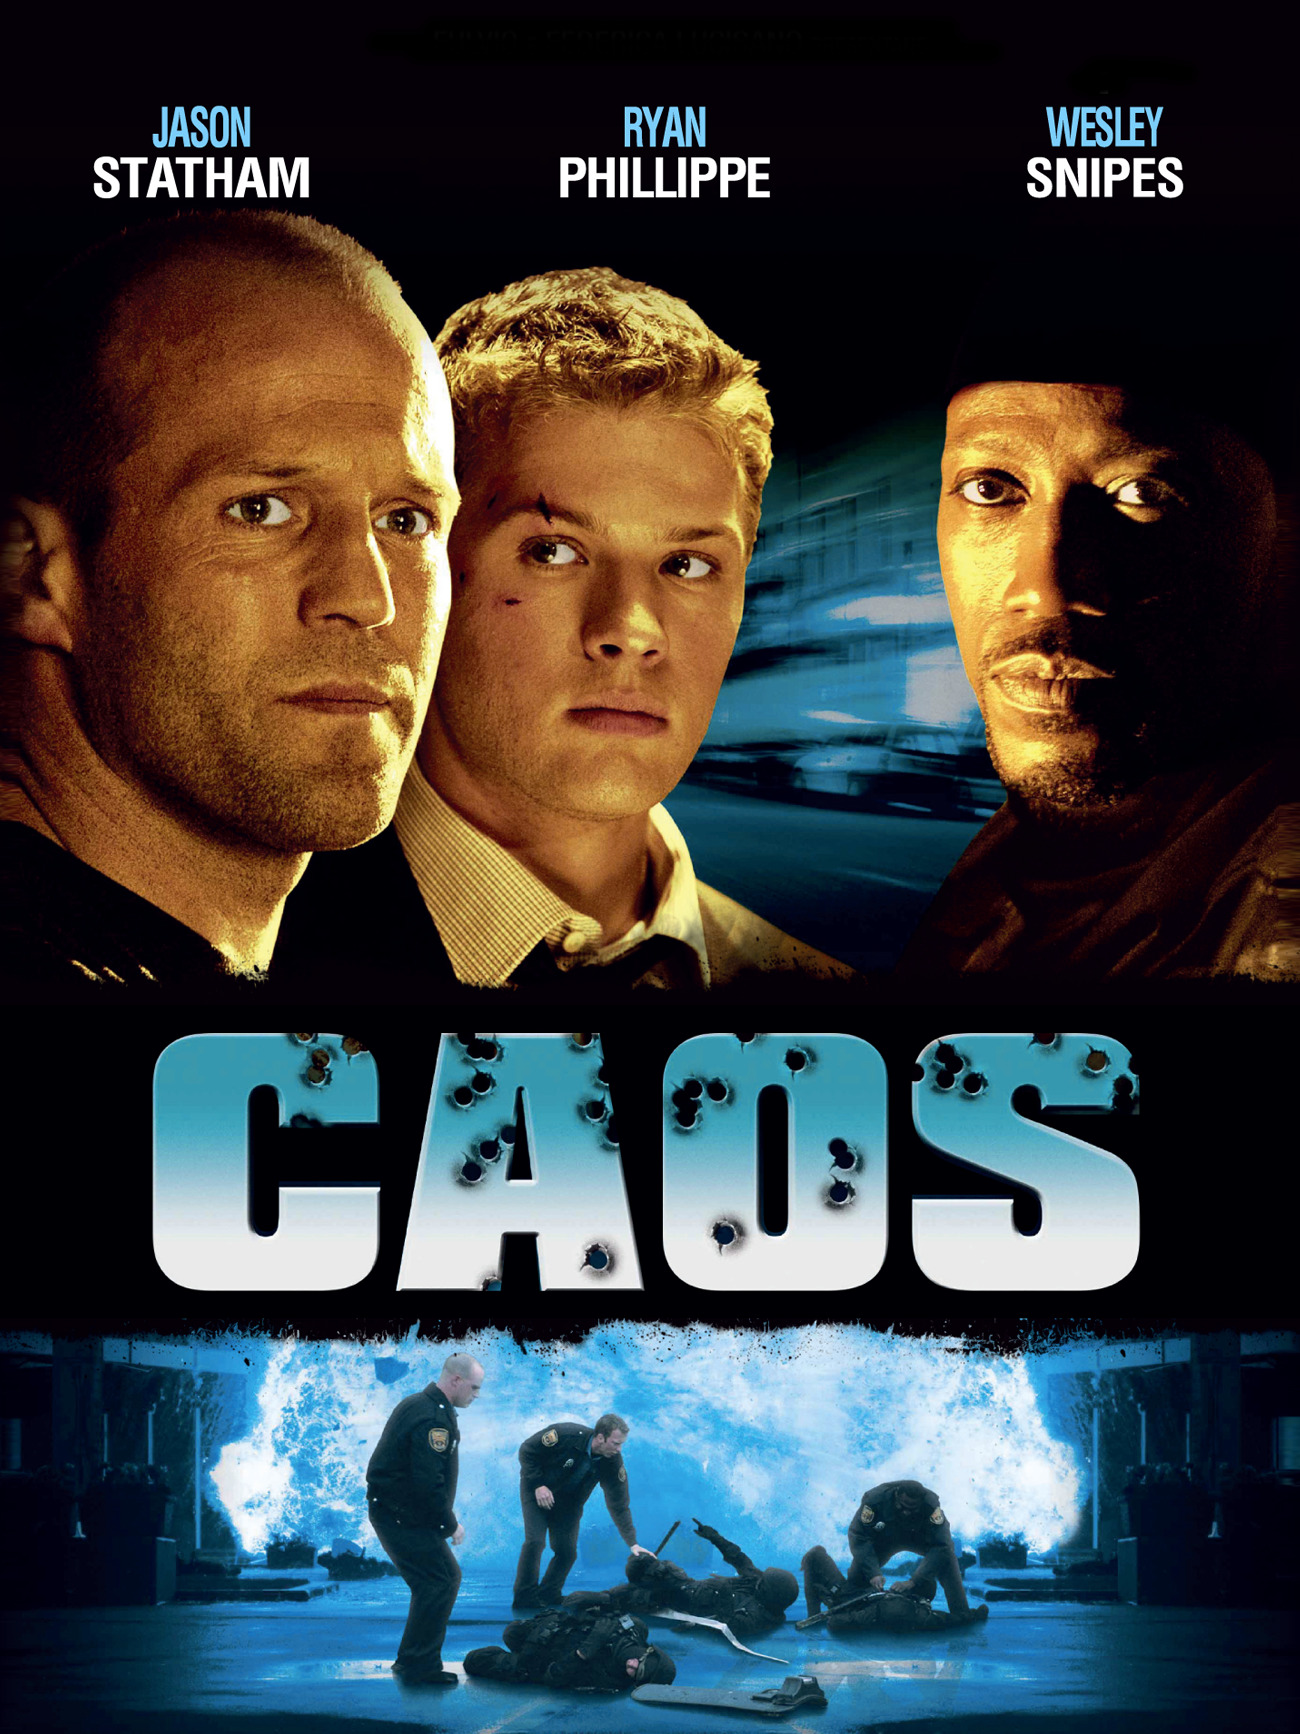 Caos (2005)